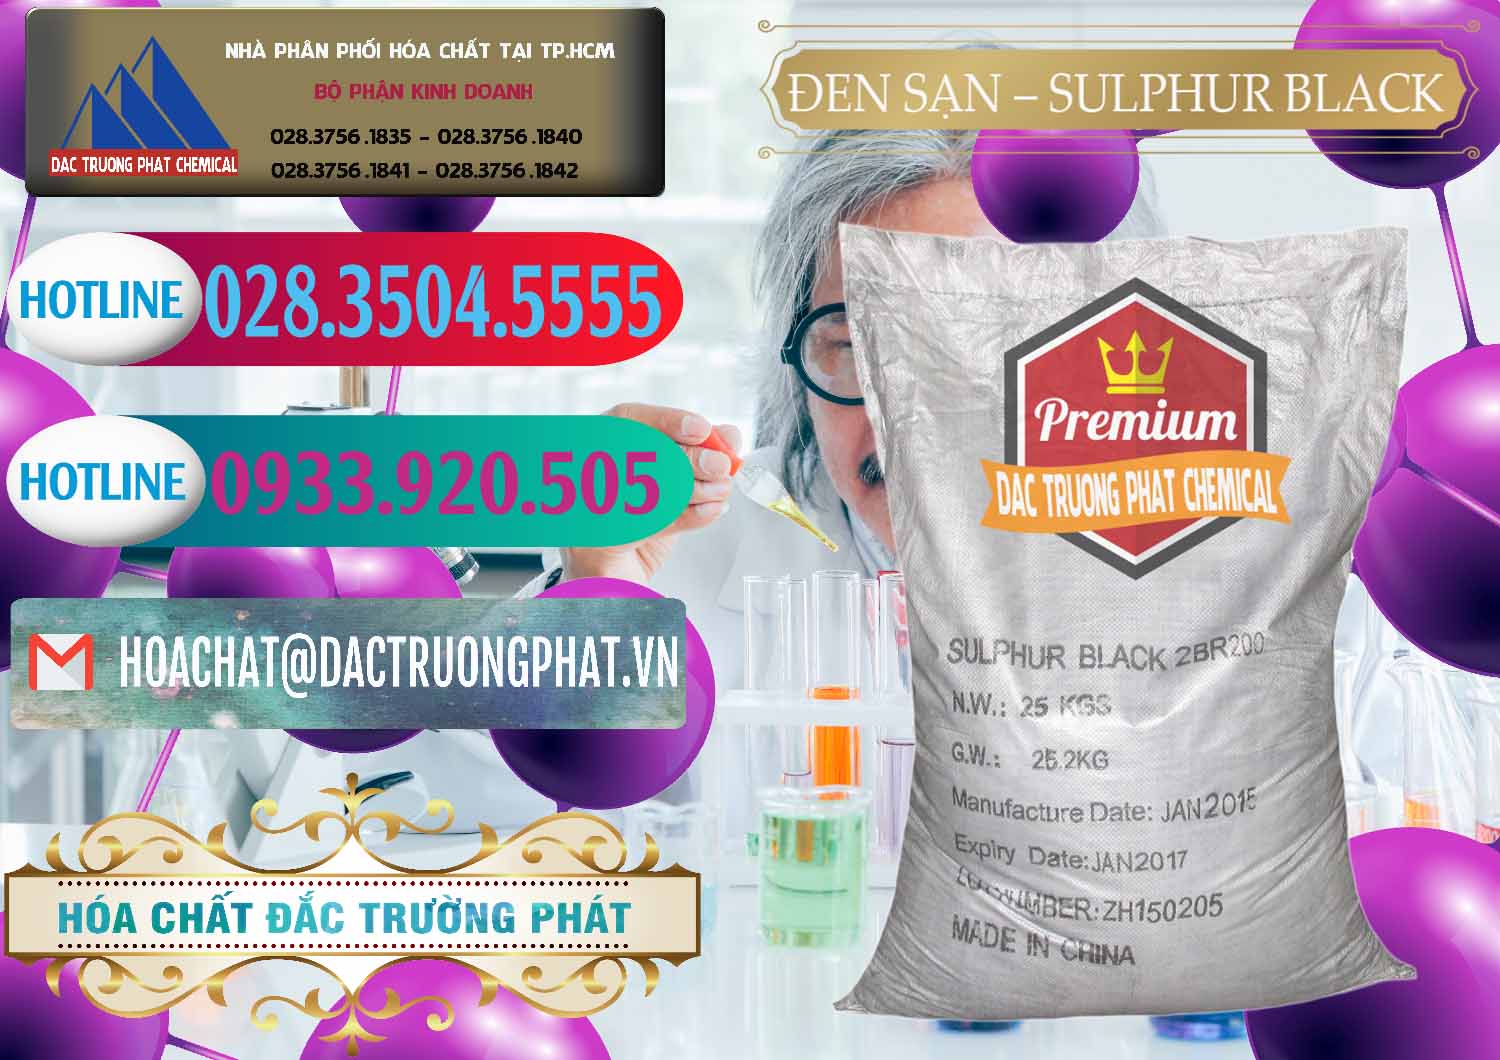 Chuyên cung cấp và bán Đen Sạn – Sulphur Black Trung Quốc China - 0062 - Công ty cung cấp ( nhập khẩu ) hóa chất tại TP.HCM - truongphat.vn